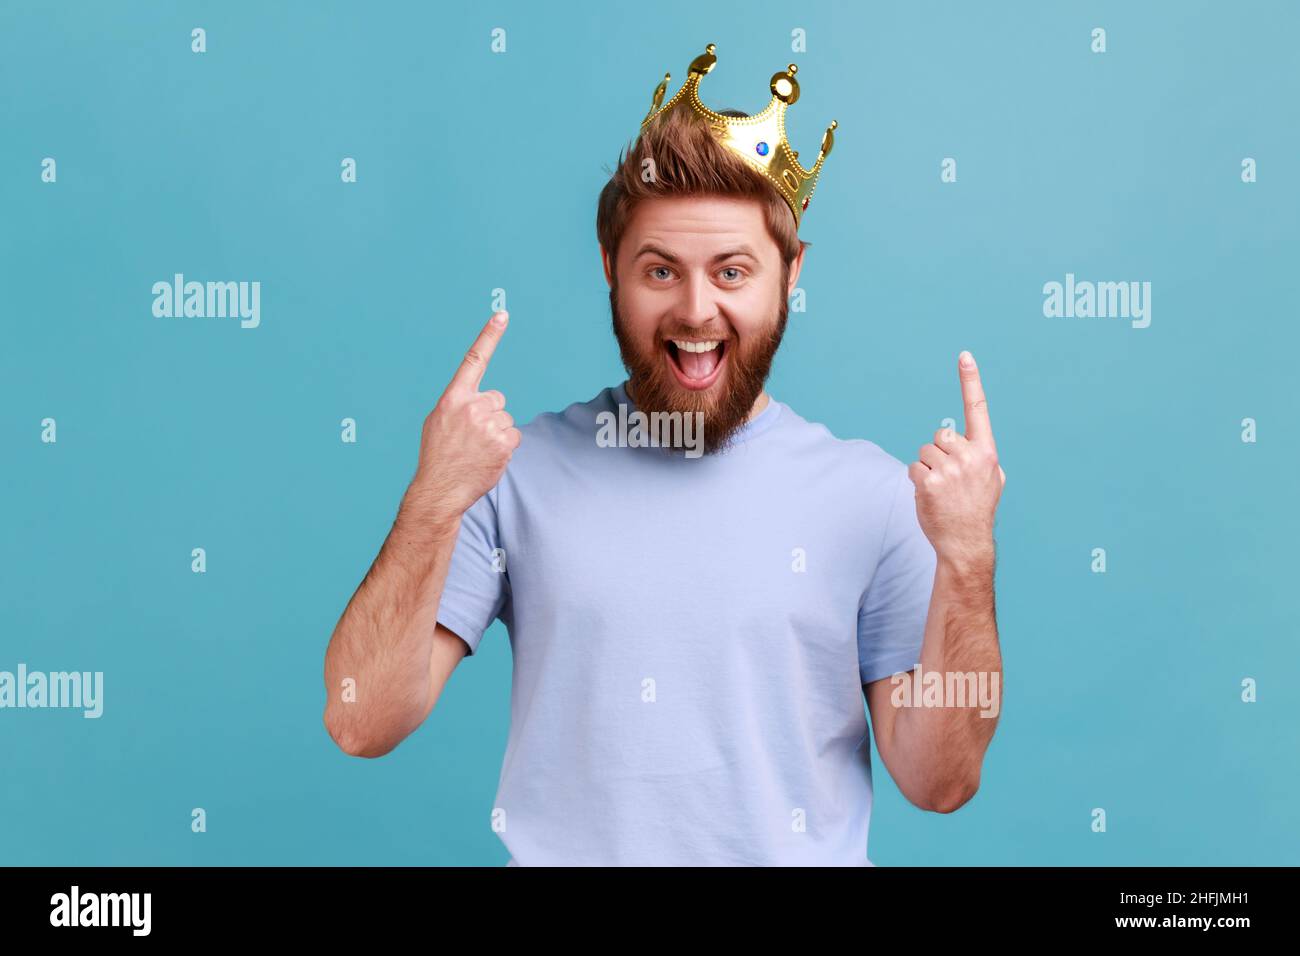 Ritratto di eccitato stupito uomo bearded puntando le dita sulla corona d'oro sulla sua testa, mostrando le sue qualità di leadership, concetto di autorità. Studio interno girato isolato su sfondo blu. Foto Stock